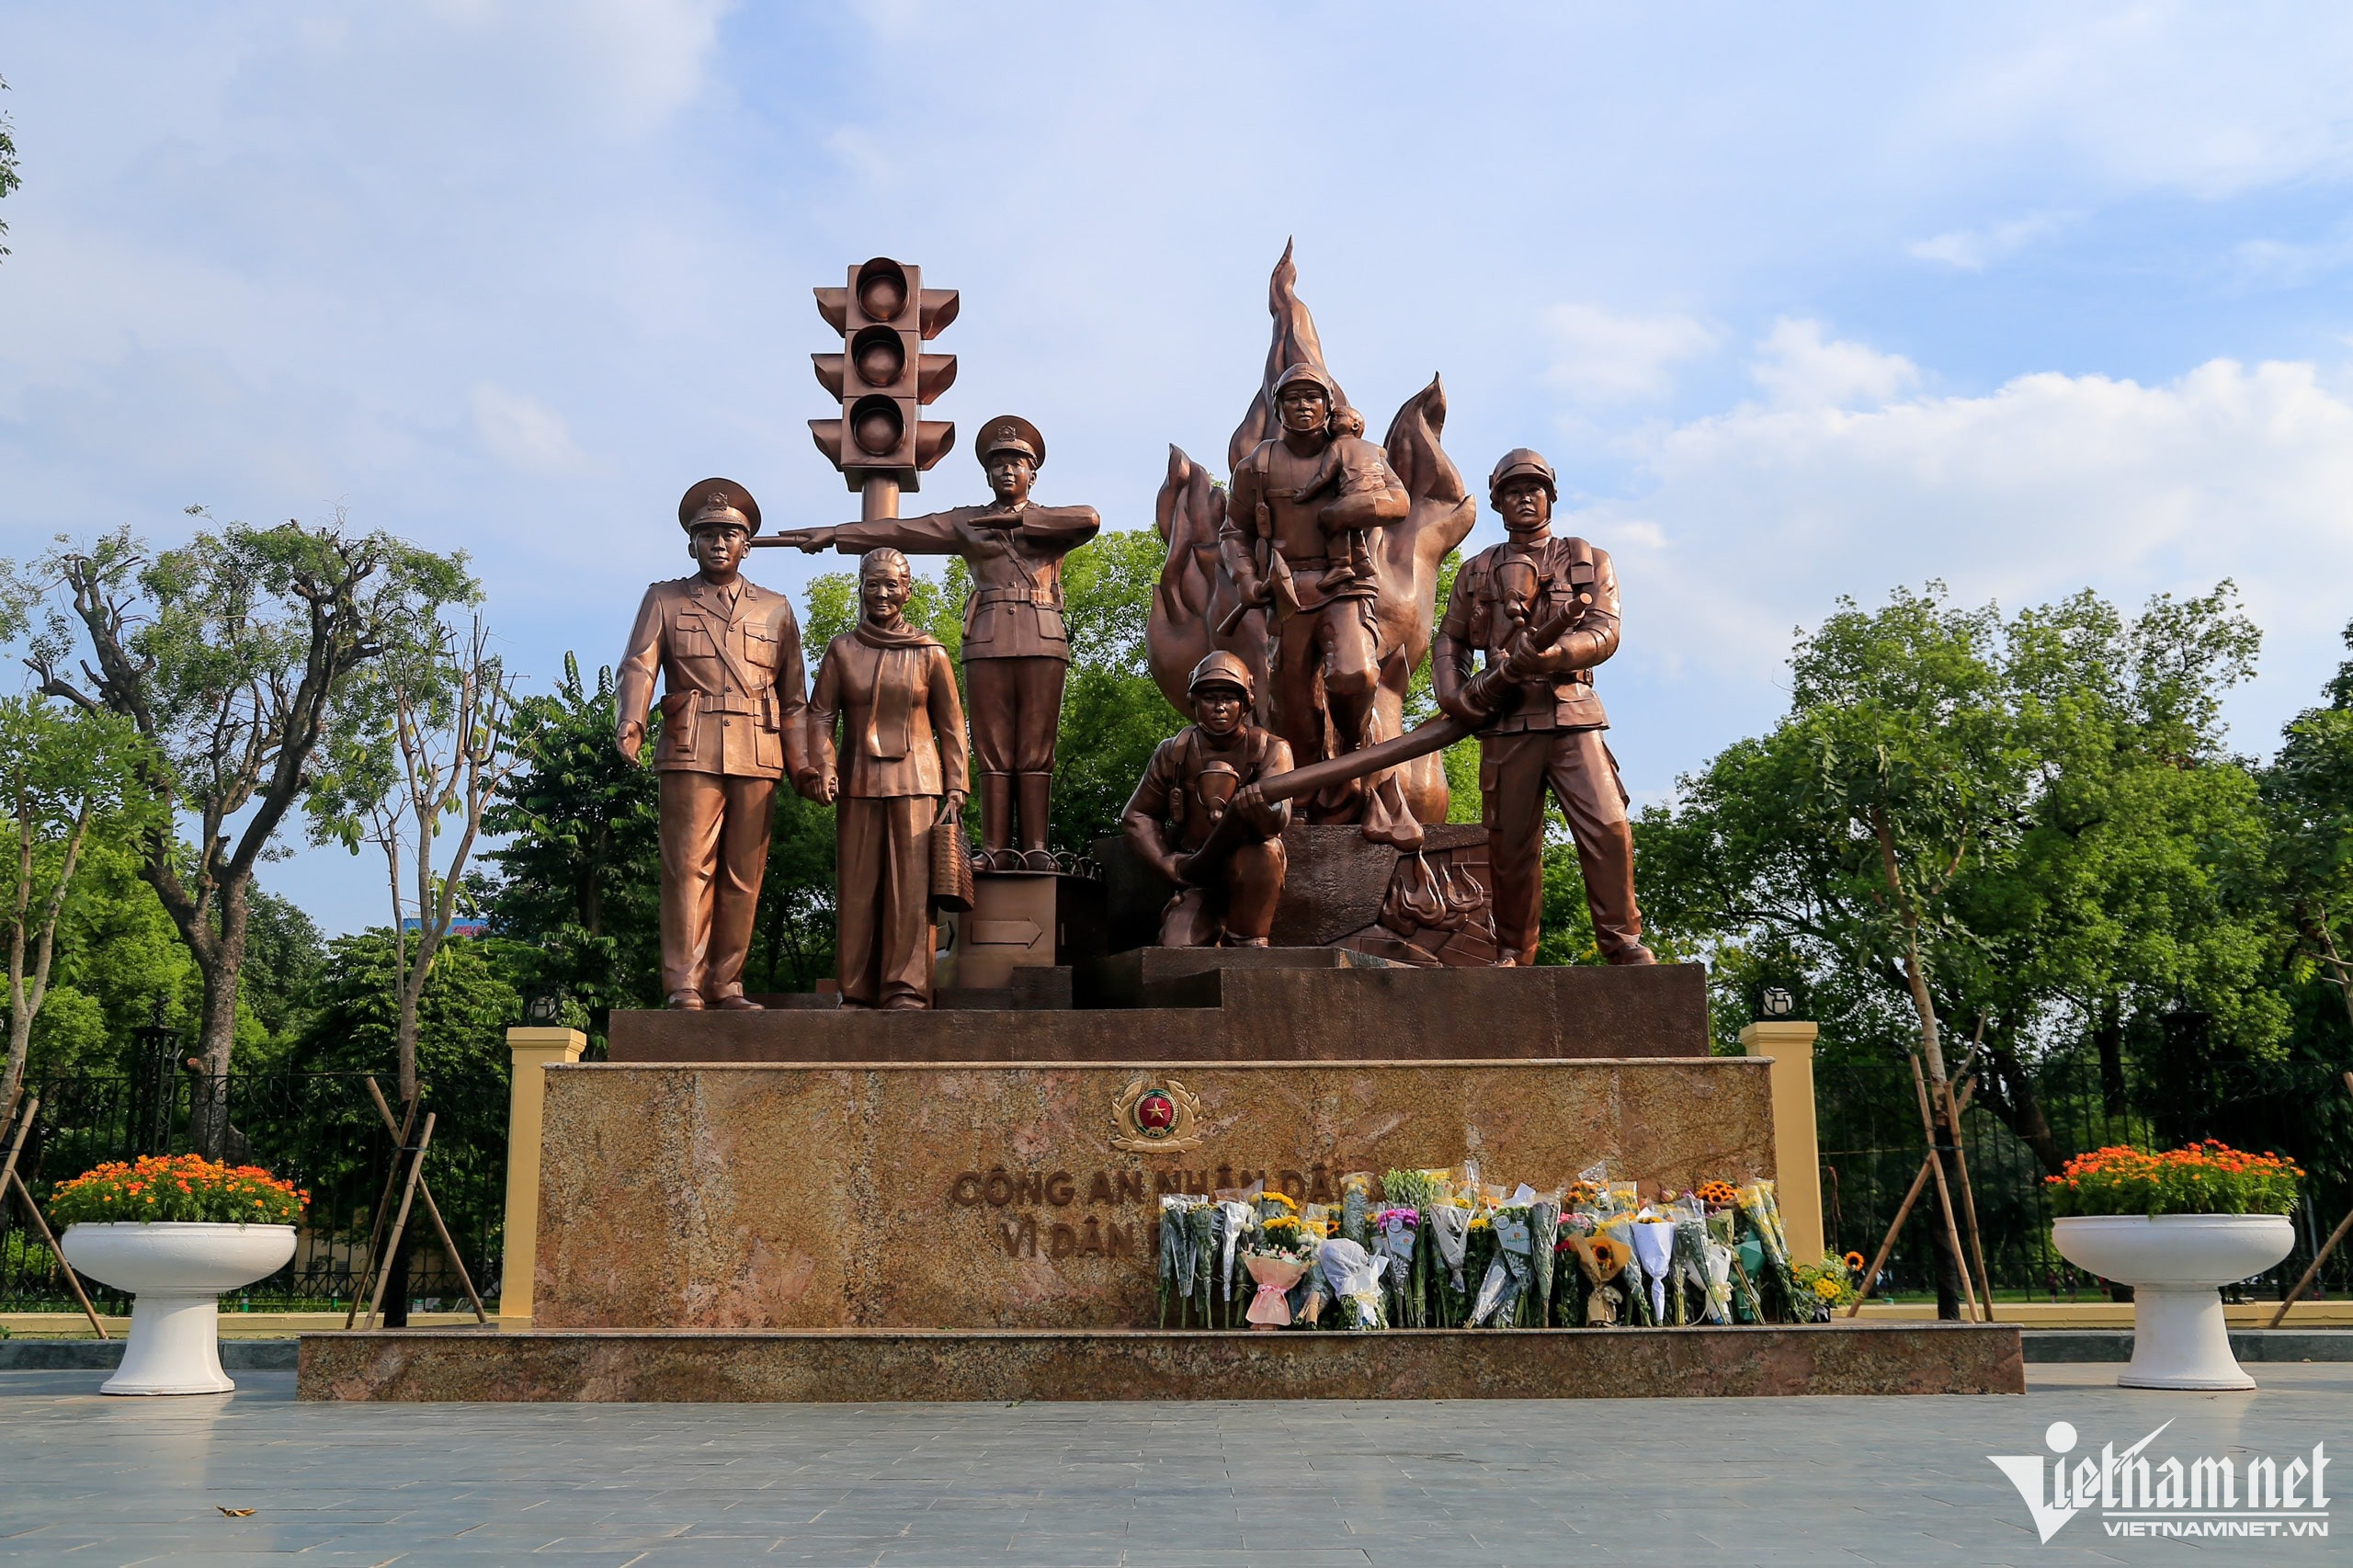 Đặt hoa tưởng nhớ ba chiến sĩ cảnh sát PCCC - VietNamNet